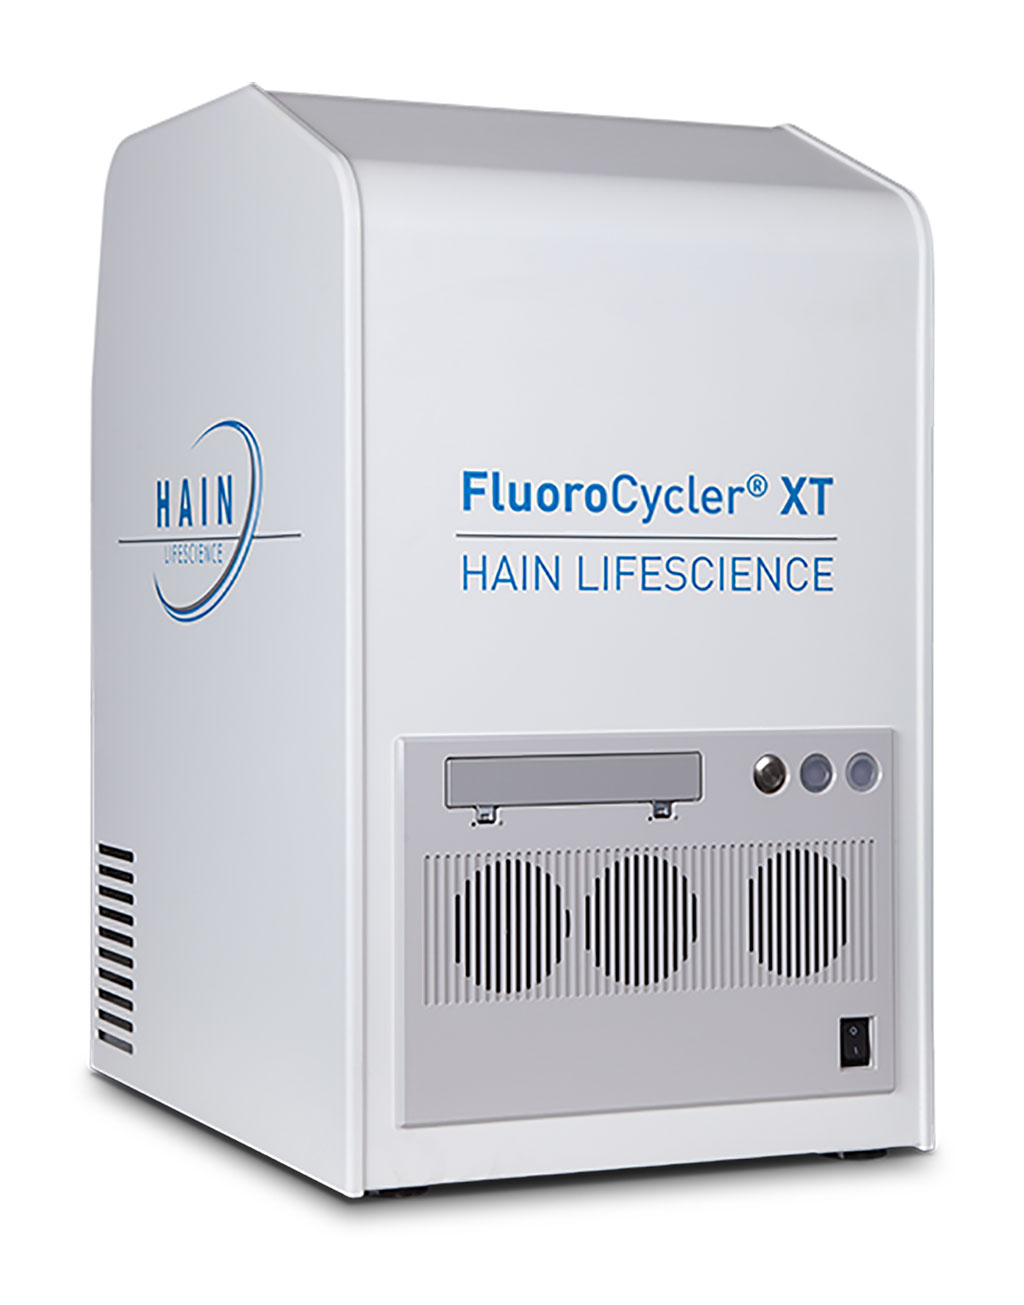 Imagen: FluoroCycler® XT (Fotografía cortesía de Bruker Corporation)